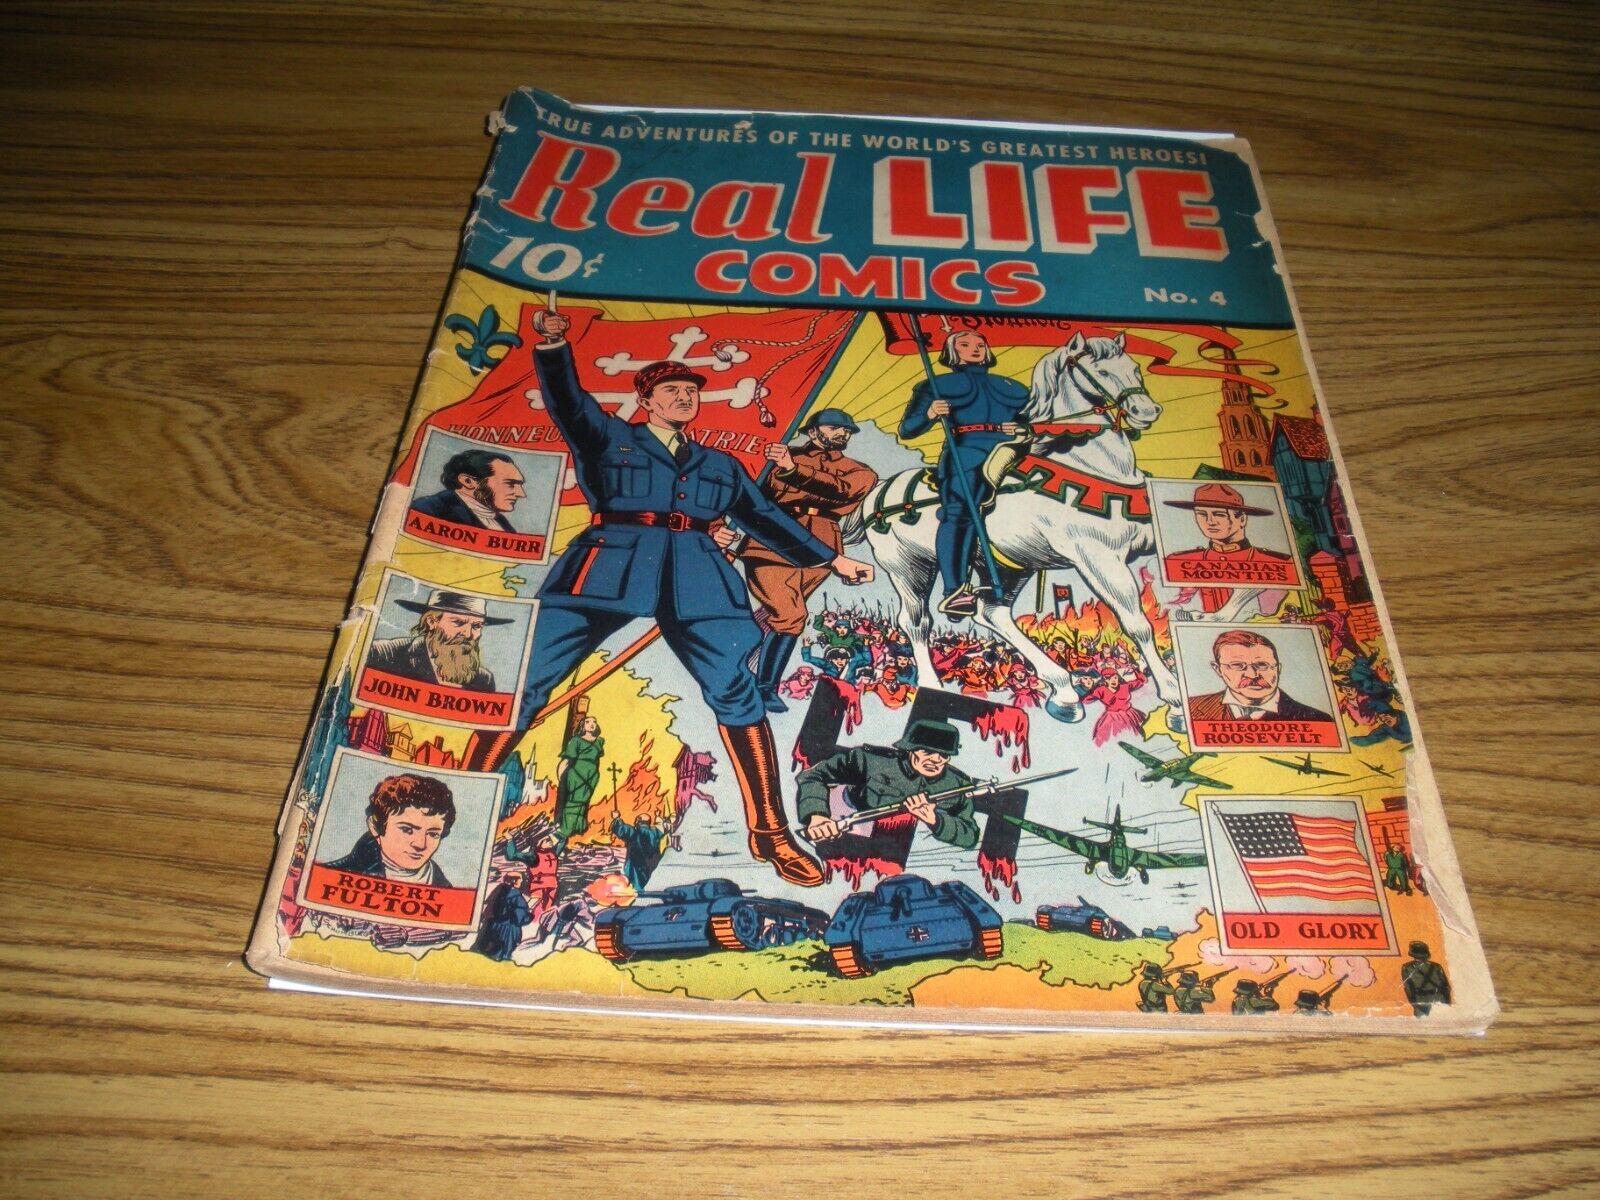 REAL LIFE COMICS #4 WAR COVER ALEX SCHOMBERG ART APRIL 1942 FR/GOOD